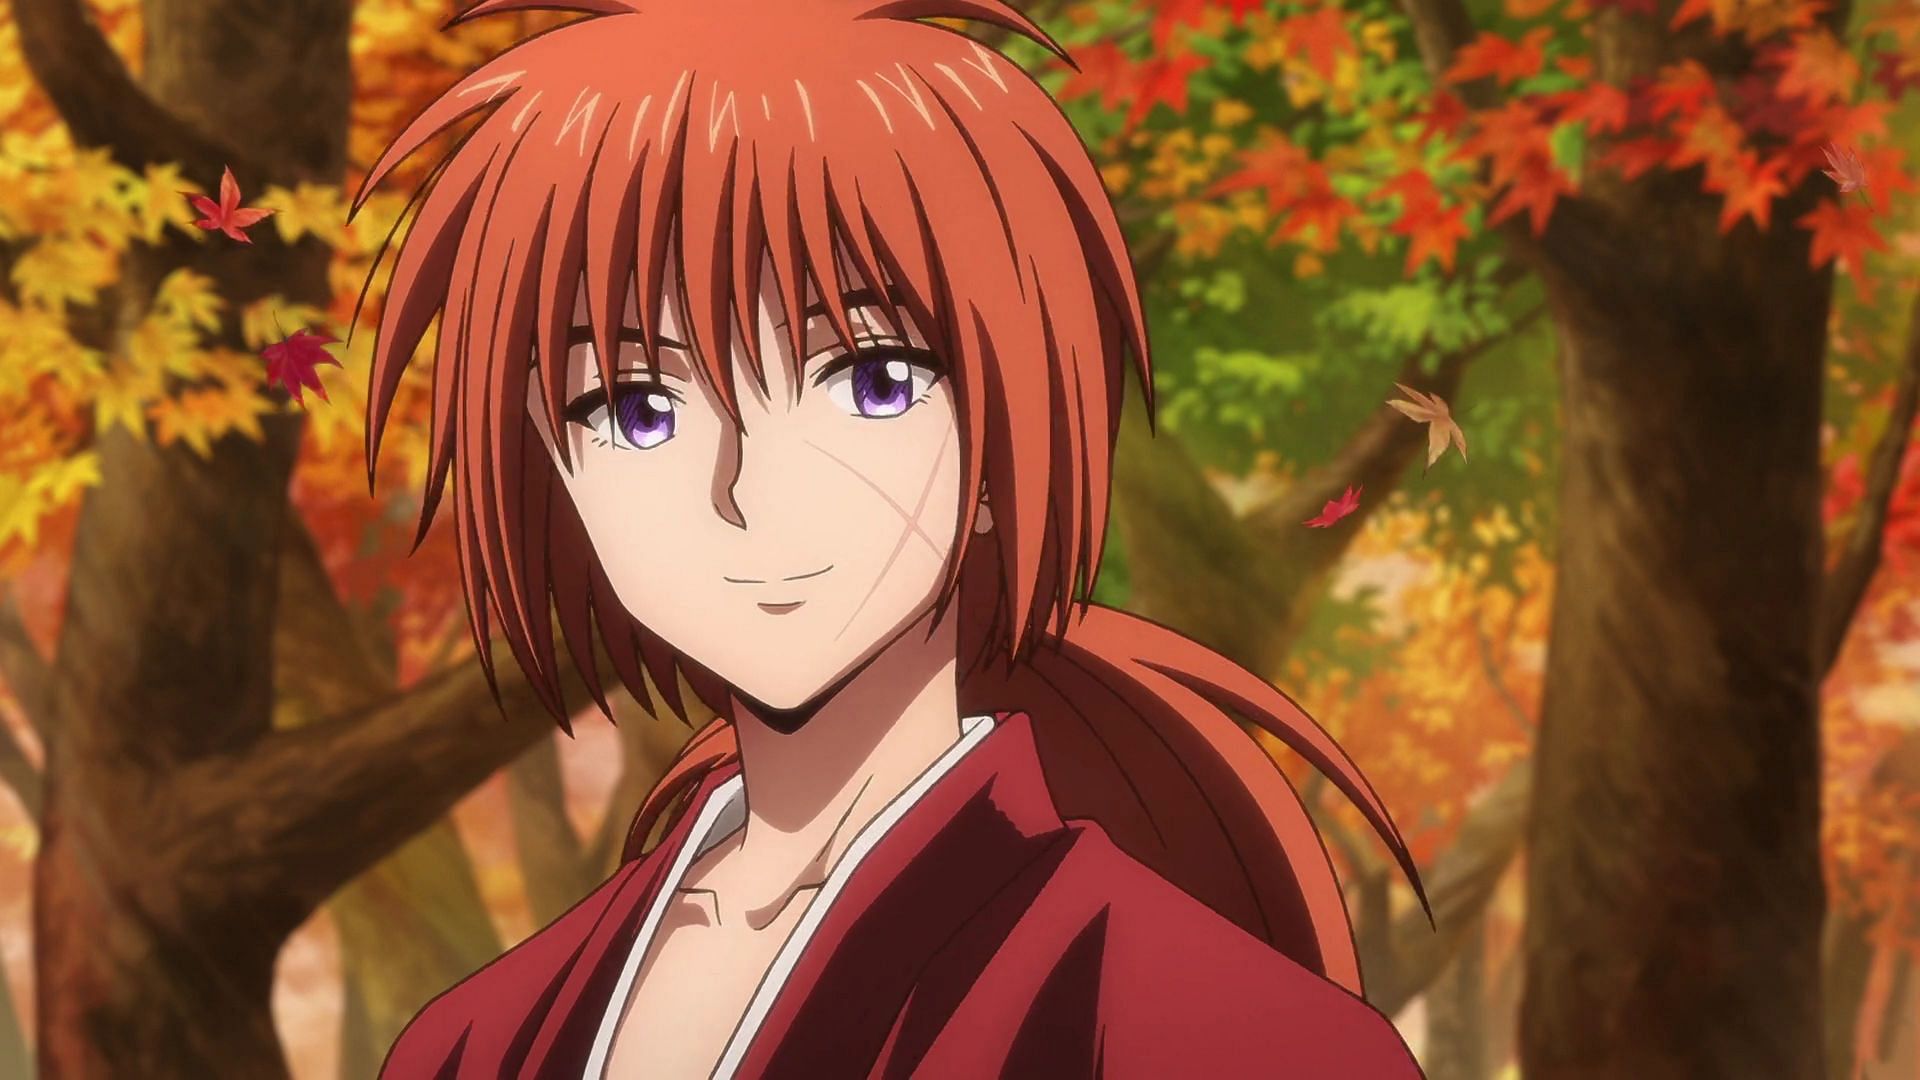 Kenshin Himura (Image via Studio Gallop, Studio Deen)